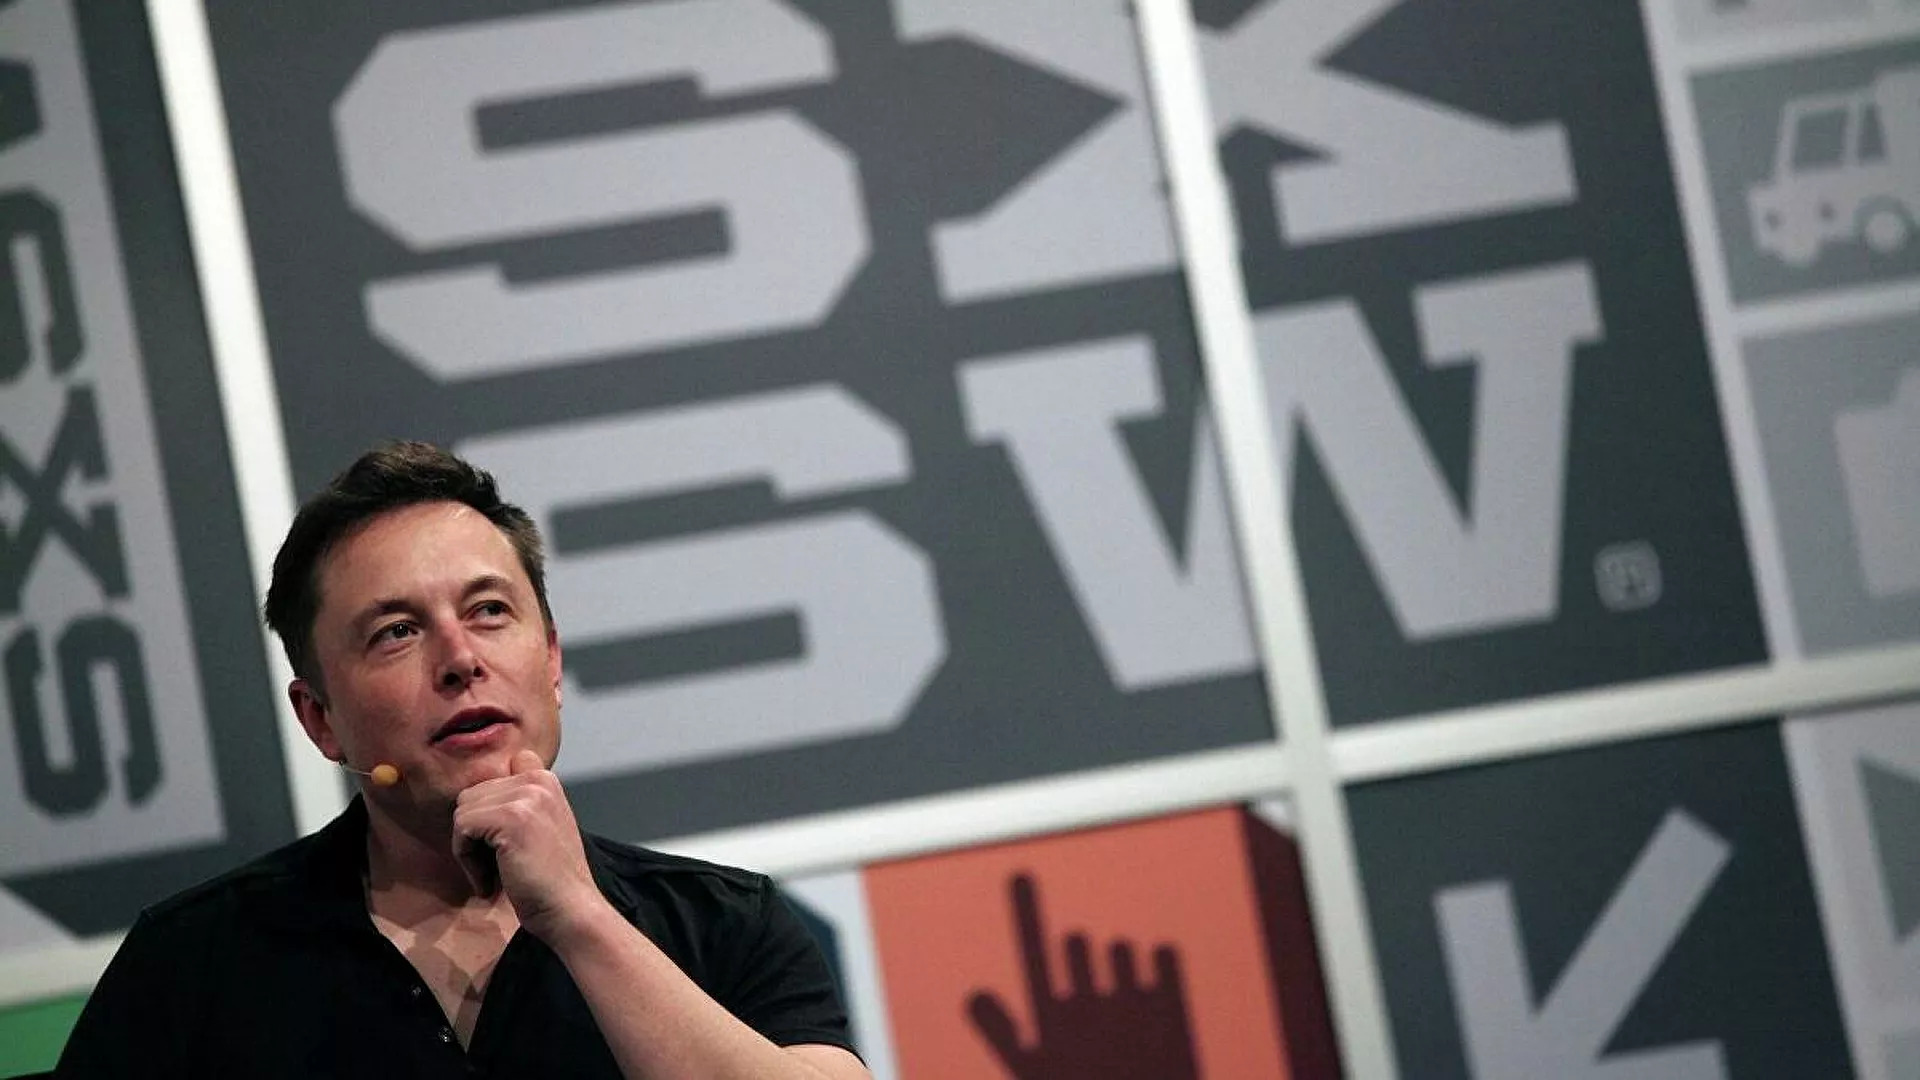 TIME Dergisi, Elon Musk'ı 'Yılın Kişisi' seçti